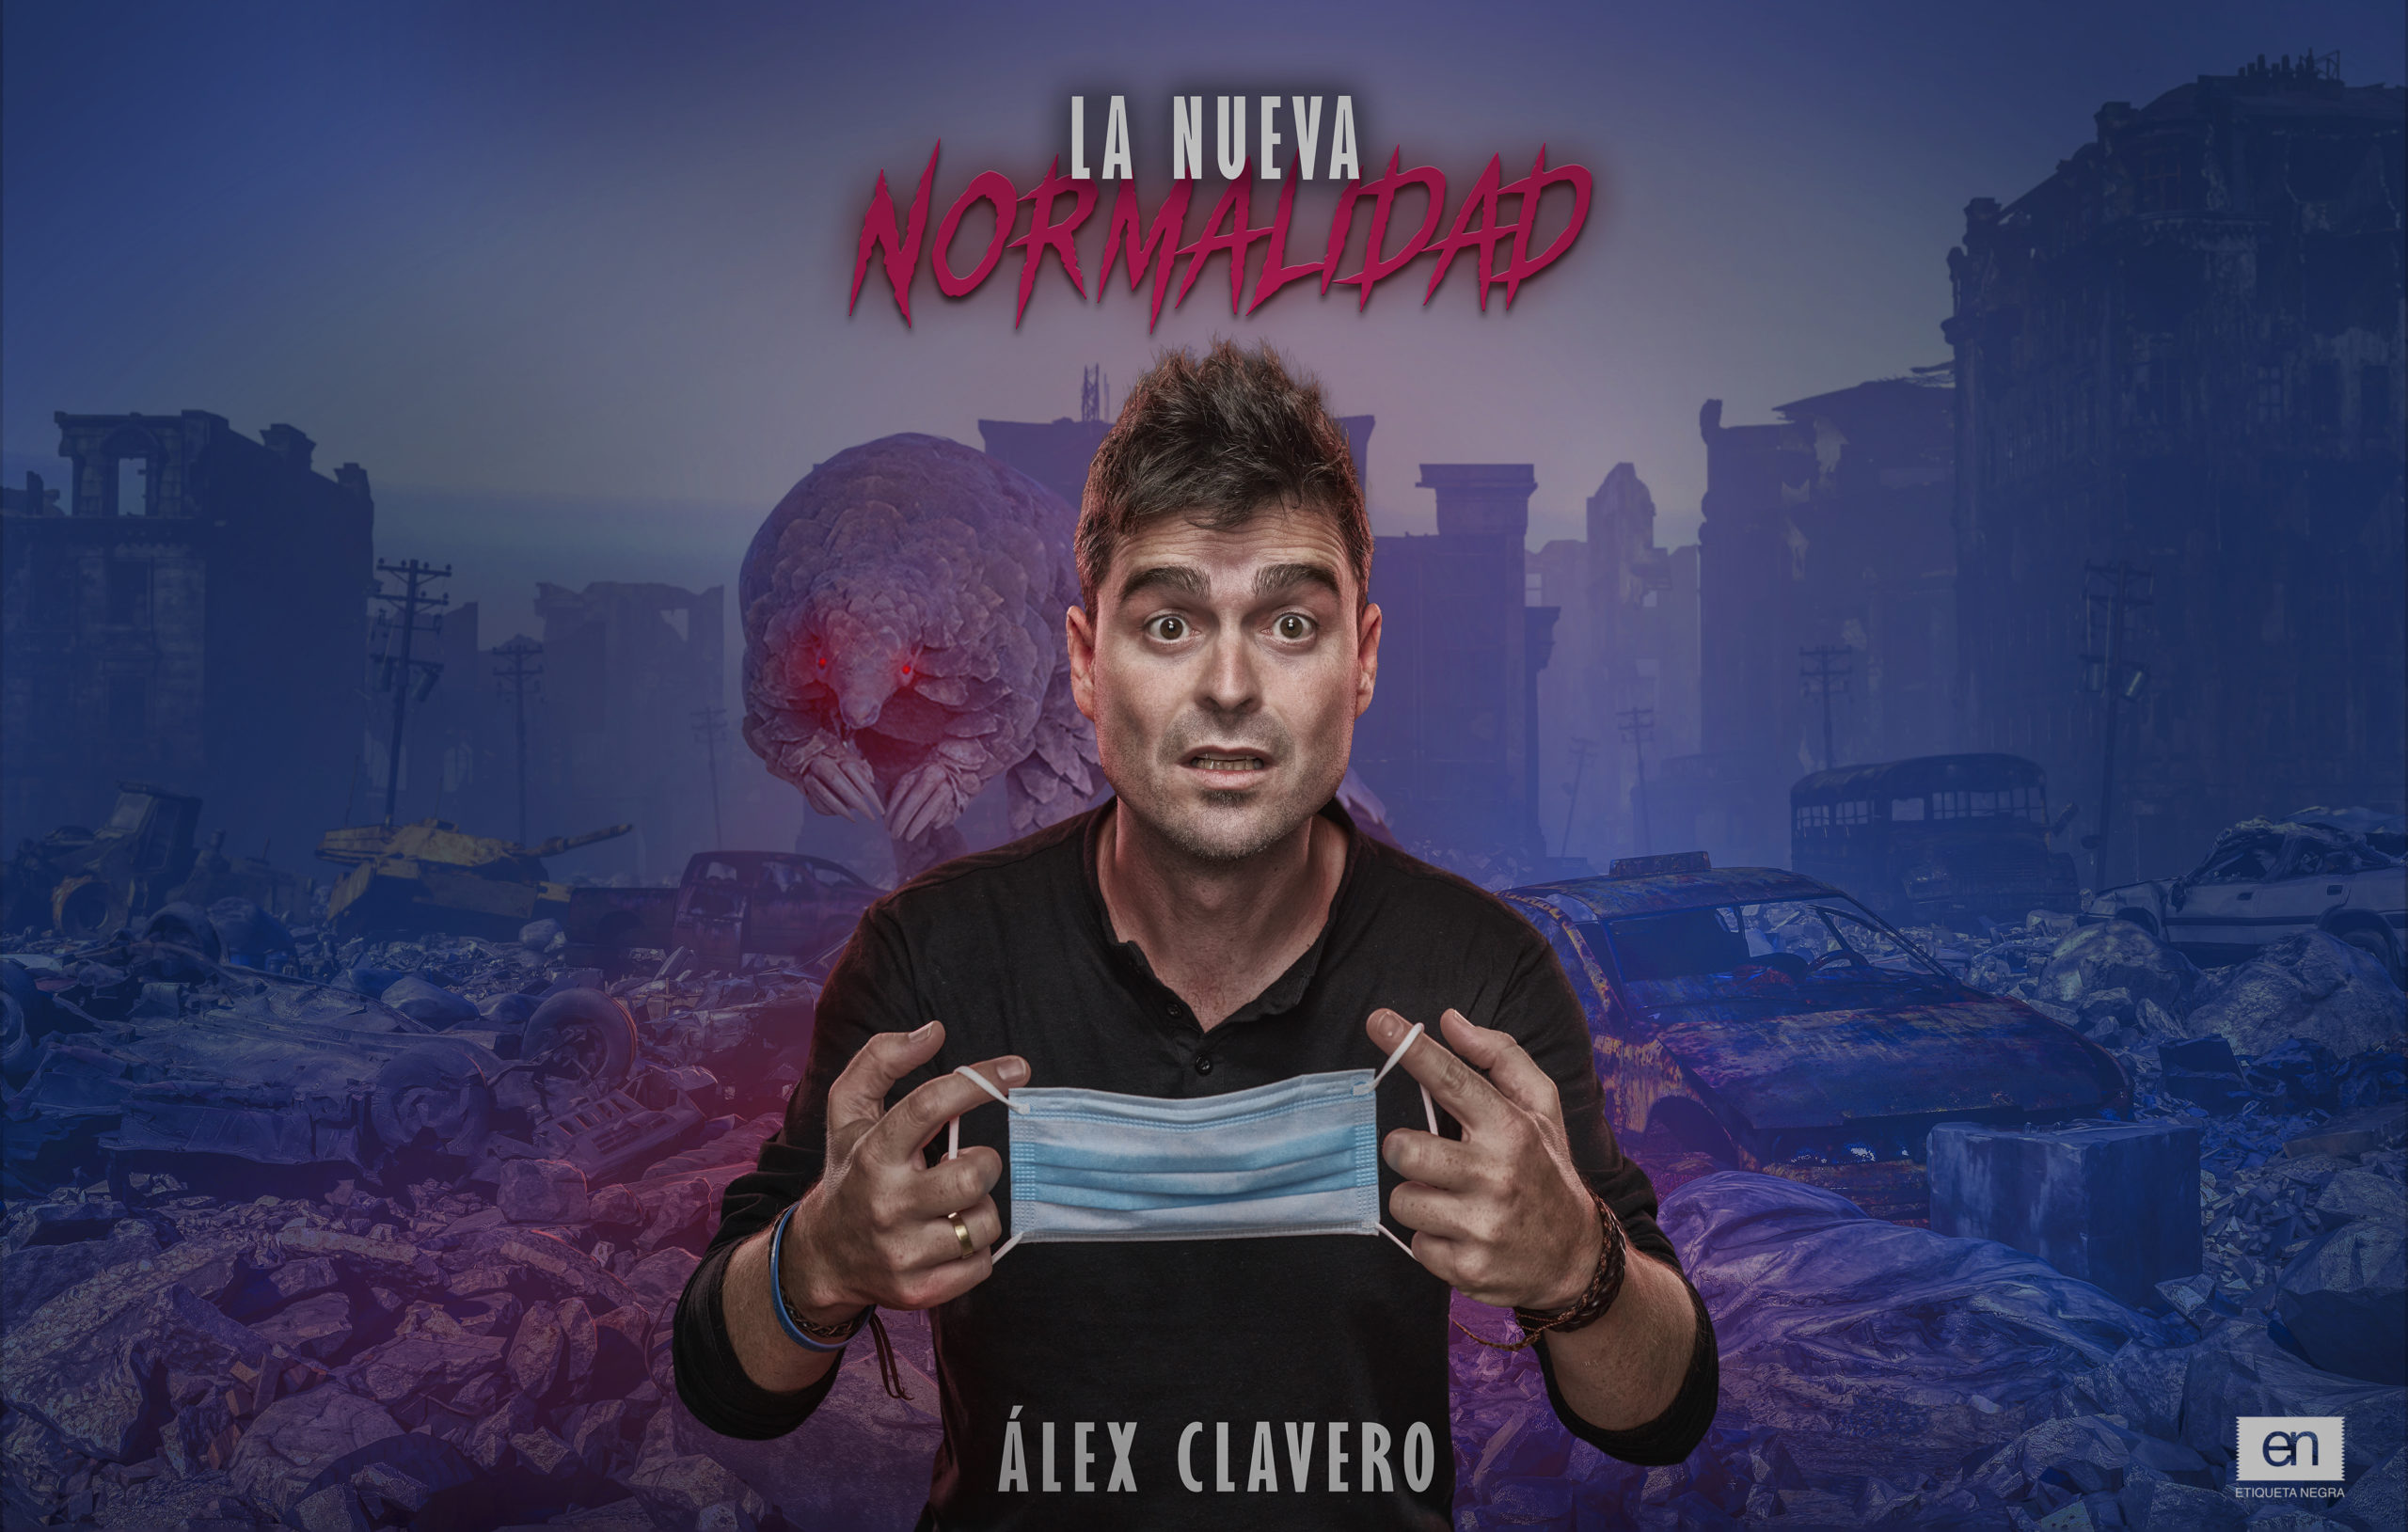 El humorista Álex Clavero regresa a Avilés en abril con “La nueva normalidad”